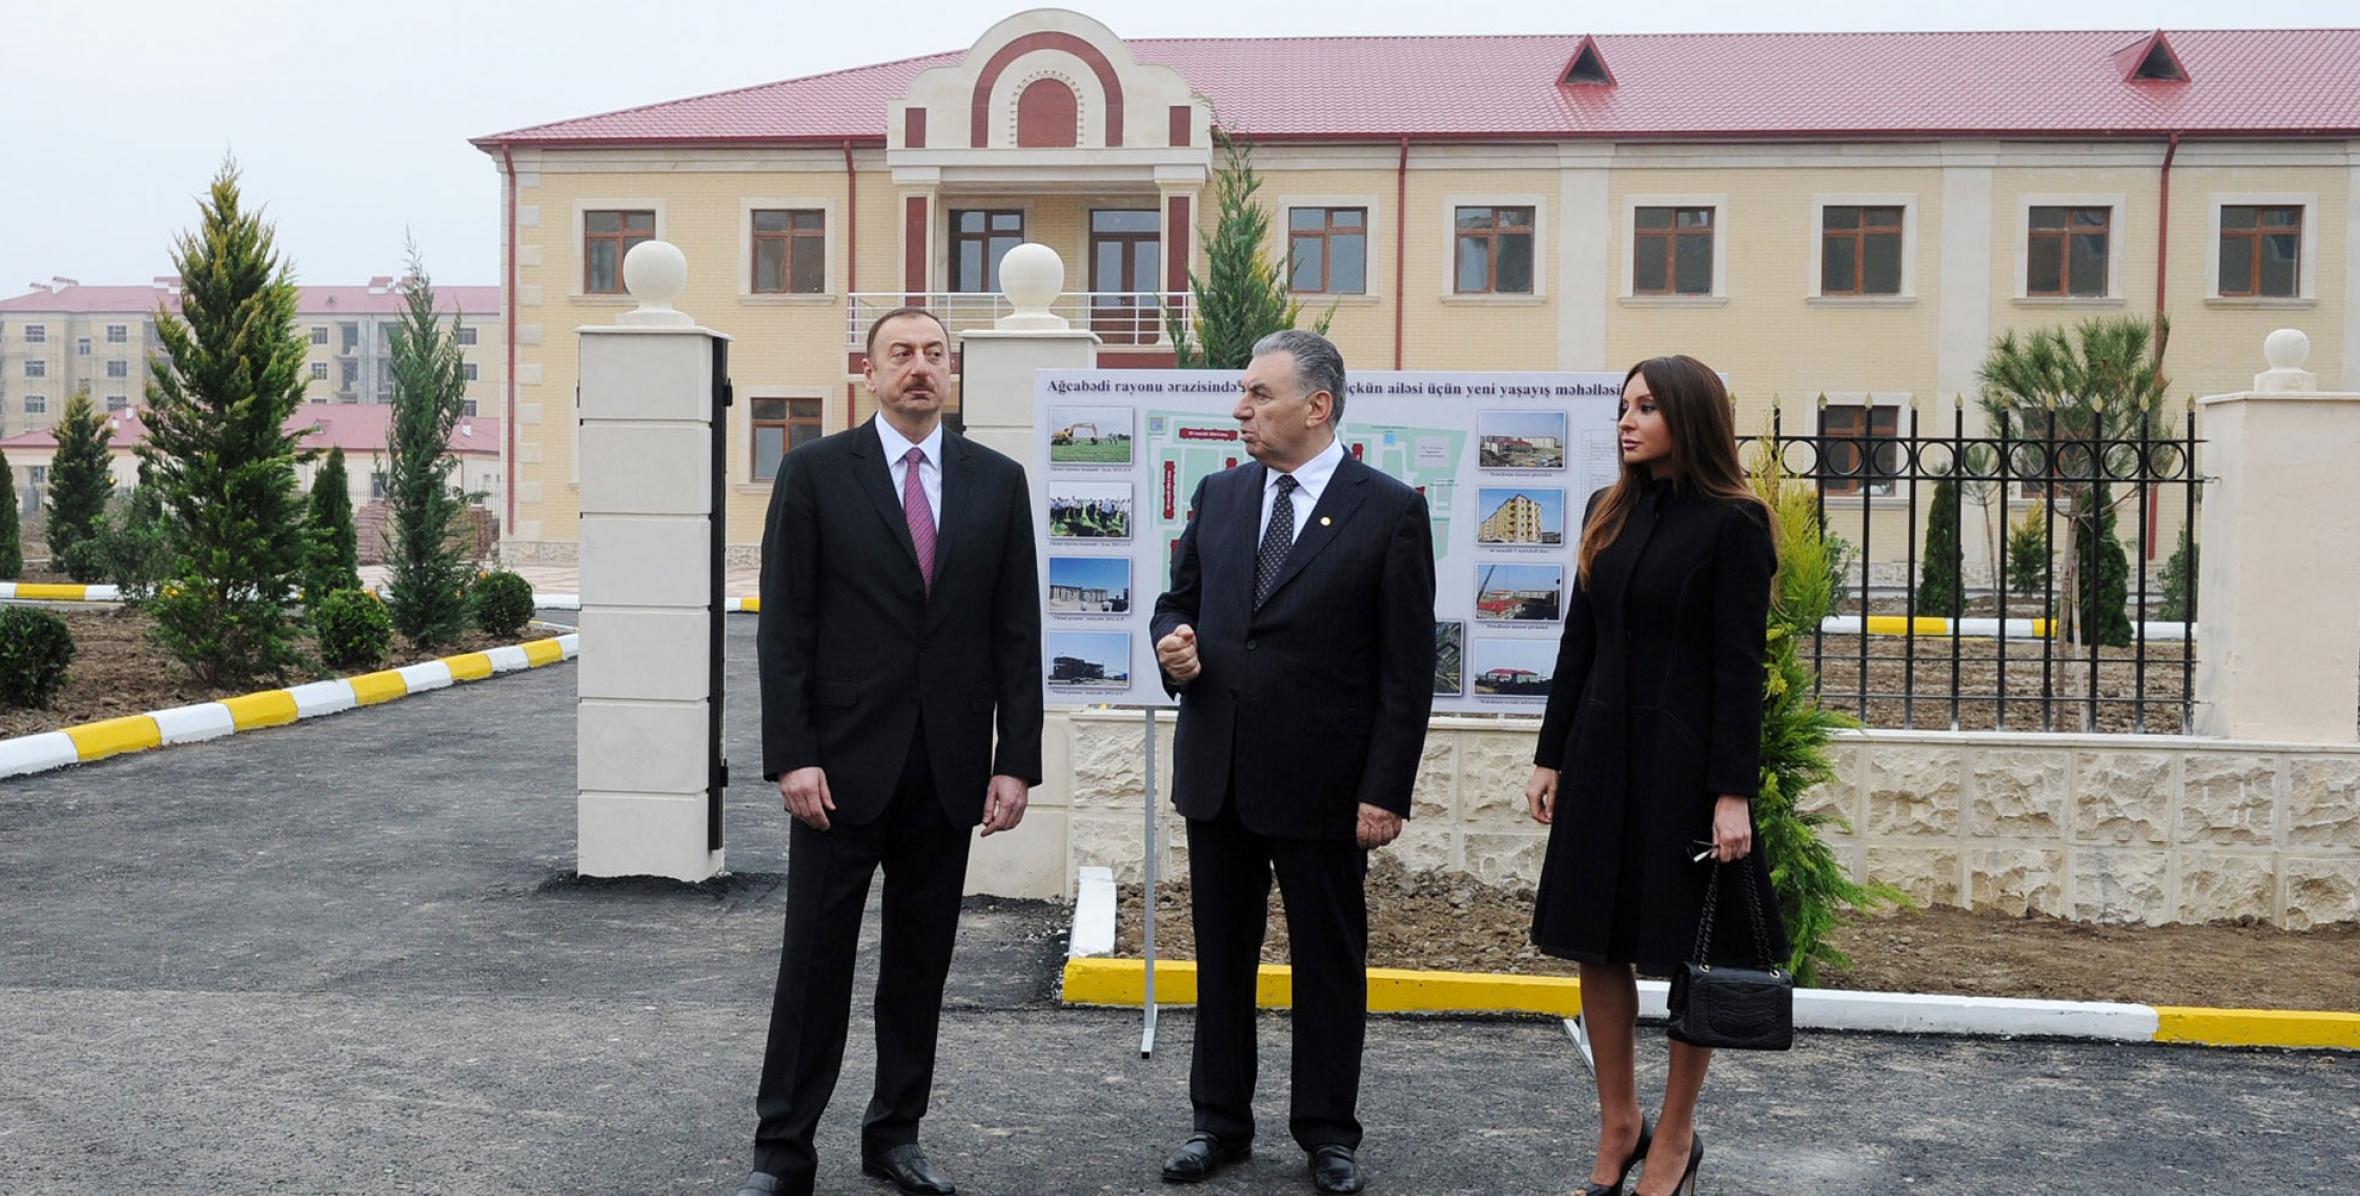 Ильхам Алиев ознакомился в Агджабединском районе с жилыми зданиями, построенными для семей беженцев и вынужденных переселенцев